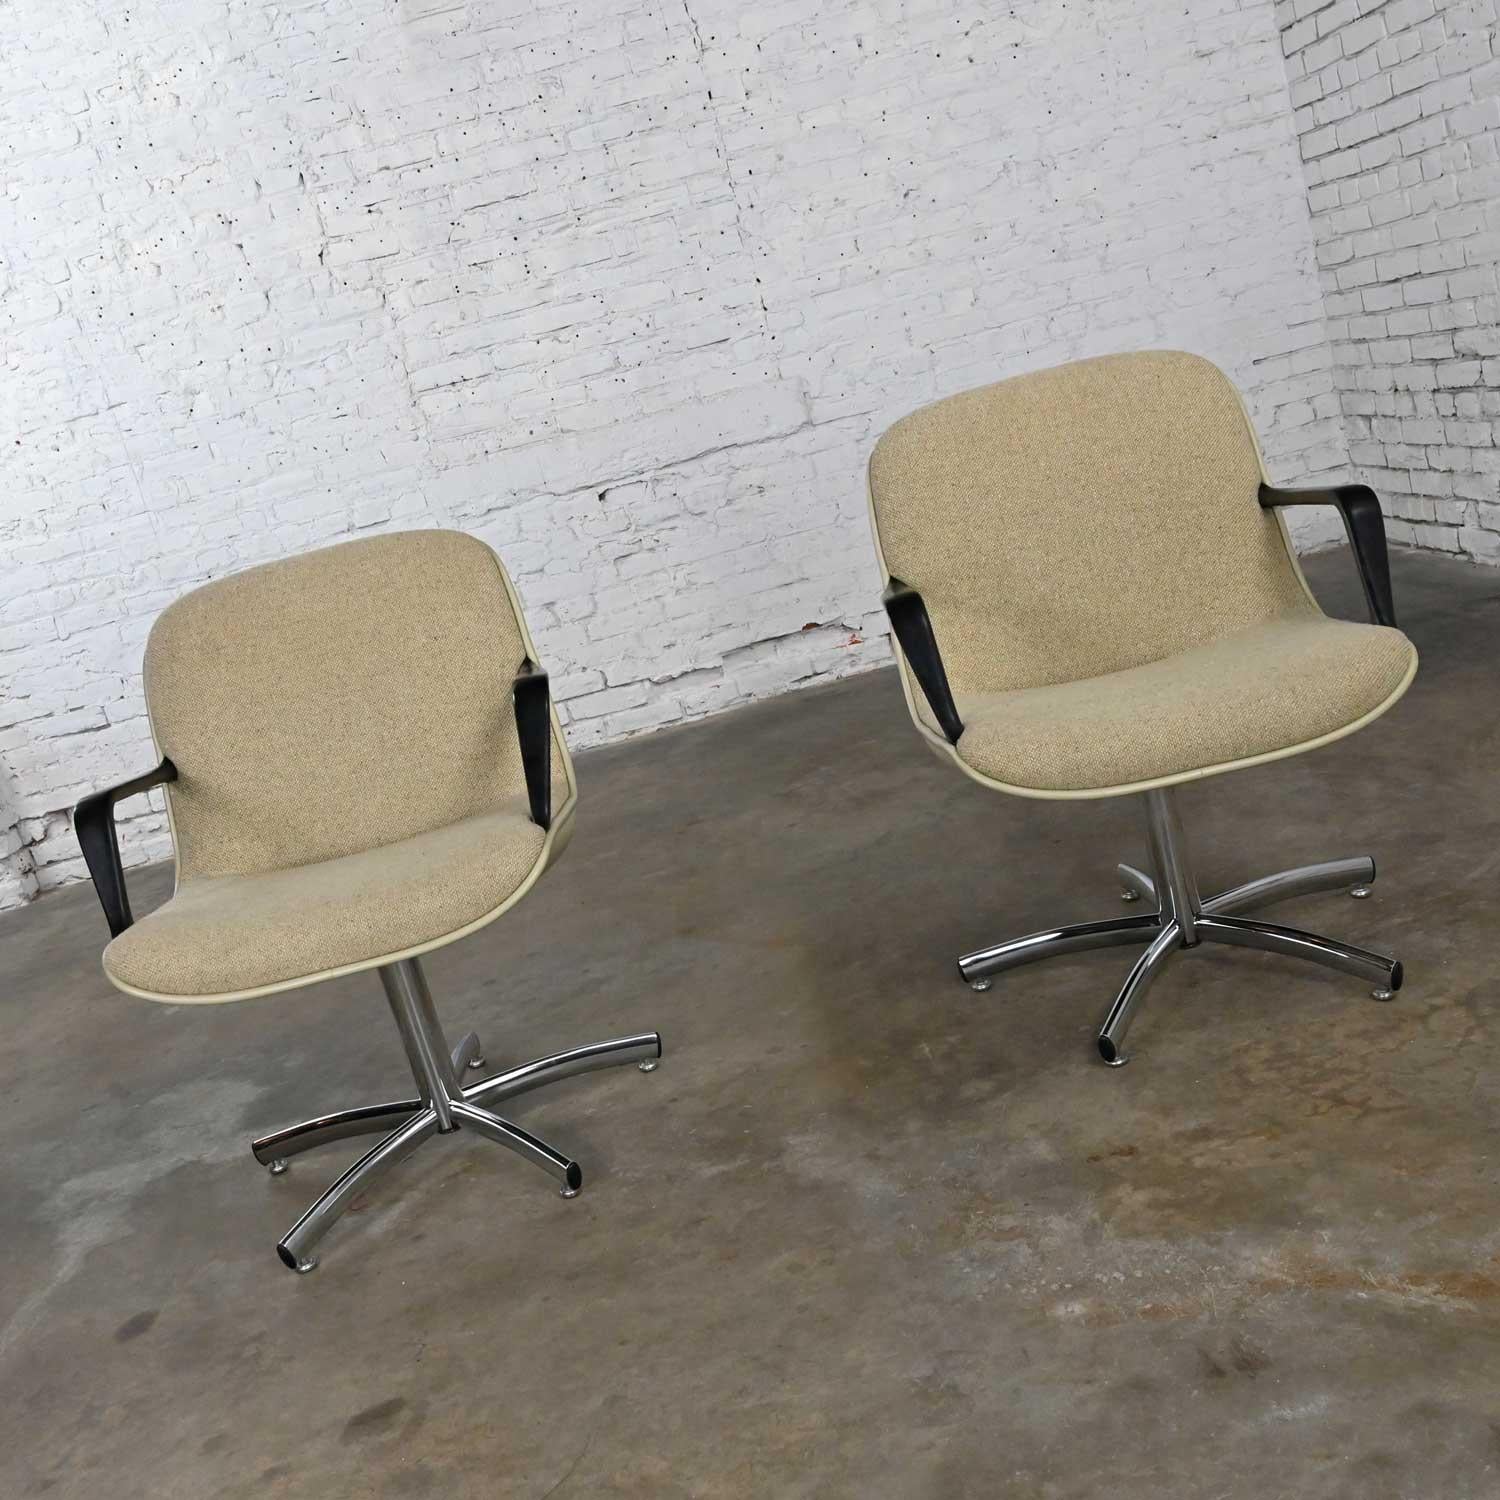 Magnifique chaise de bureau moderne Steelcase modèle #451 à base chromée à 5 branches avec tissu couleur avoine dans le style de la chaise de bureau Charles Pollock pour Knoll. Belle condition, en gardant à l'esprit qu'il s'agit d'un produit vintage